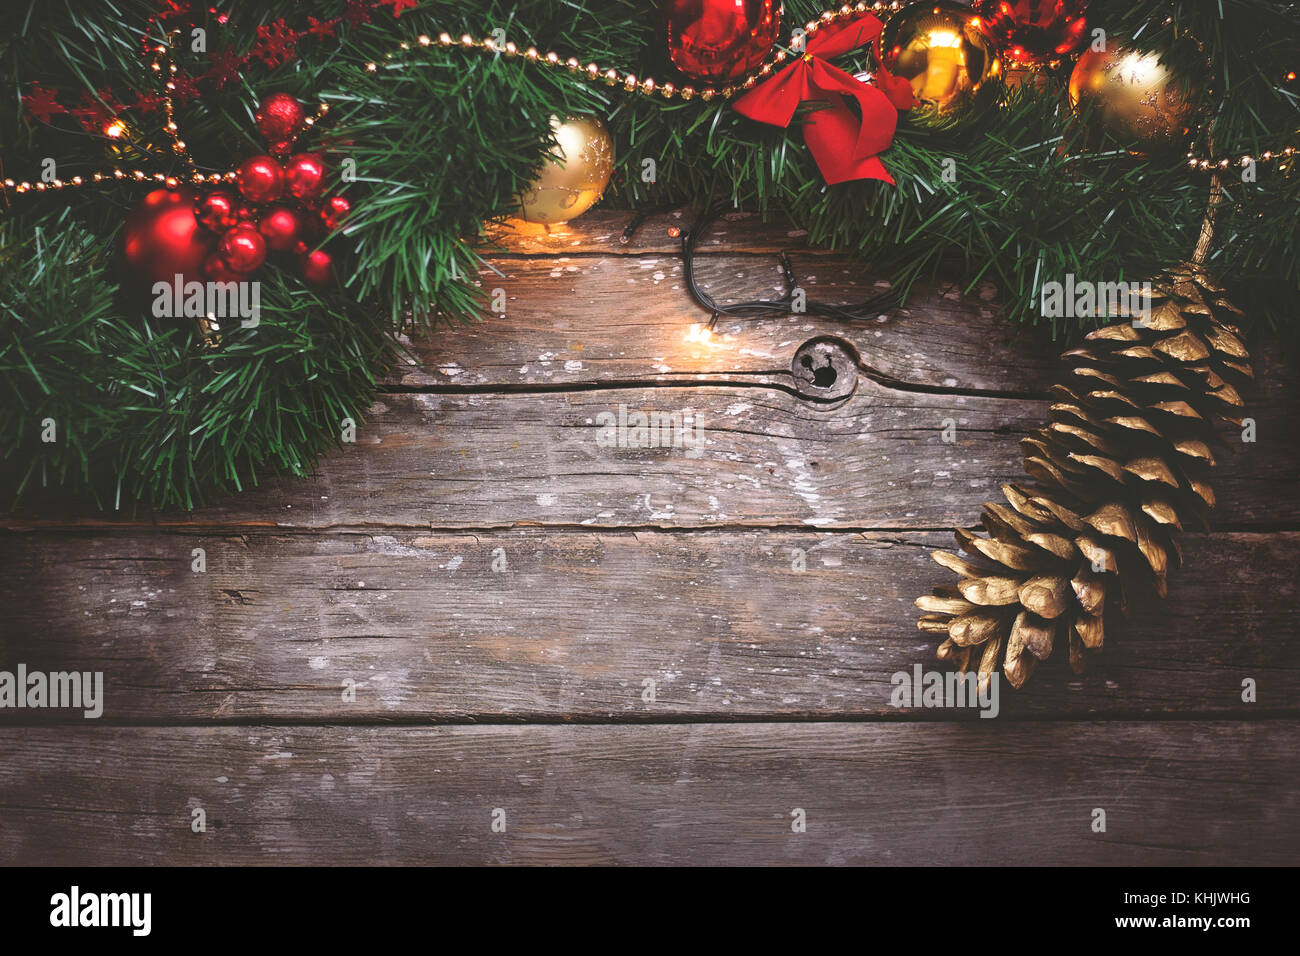 Sfondi Natalizi Rossi.Sfondo Di Natale Garland Dorata E Ornamenti Rossi E Pini Cono Su Scuro Dello Sfondo In Legno Foto Stock Alamy